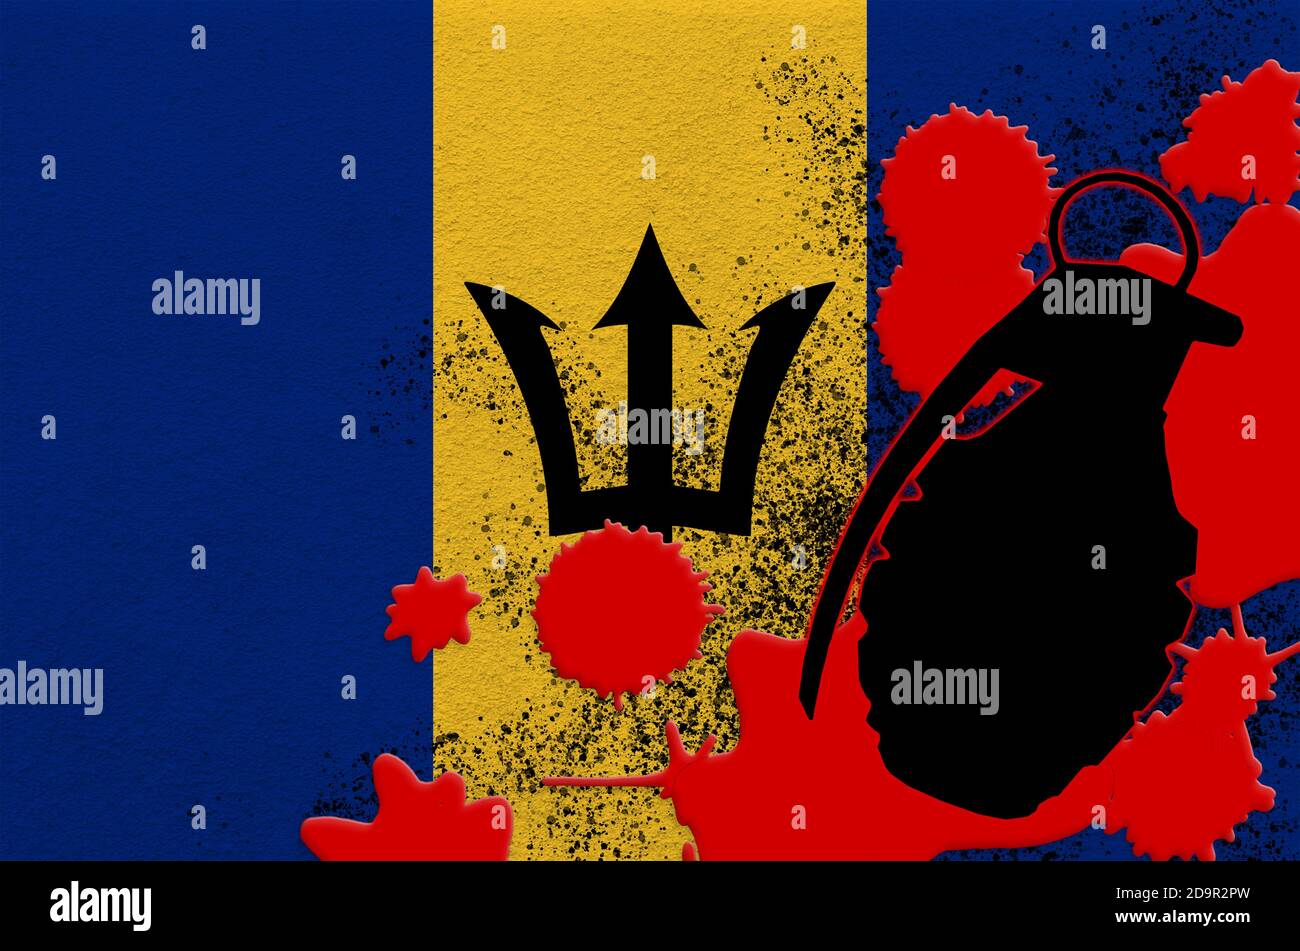 Drapeau de la Barbade et grenade à scories MK2 dans du sang rouge. Concept d'attaque terroriste ou d'opérations militaires avec un résultat mortel. Arme dangereuse projectile usa Banque D'Images